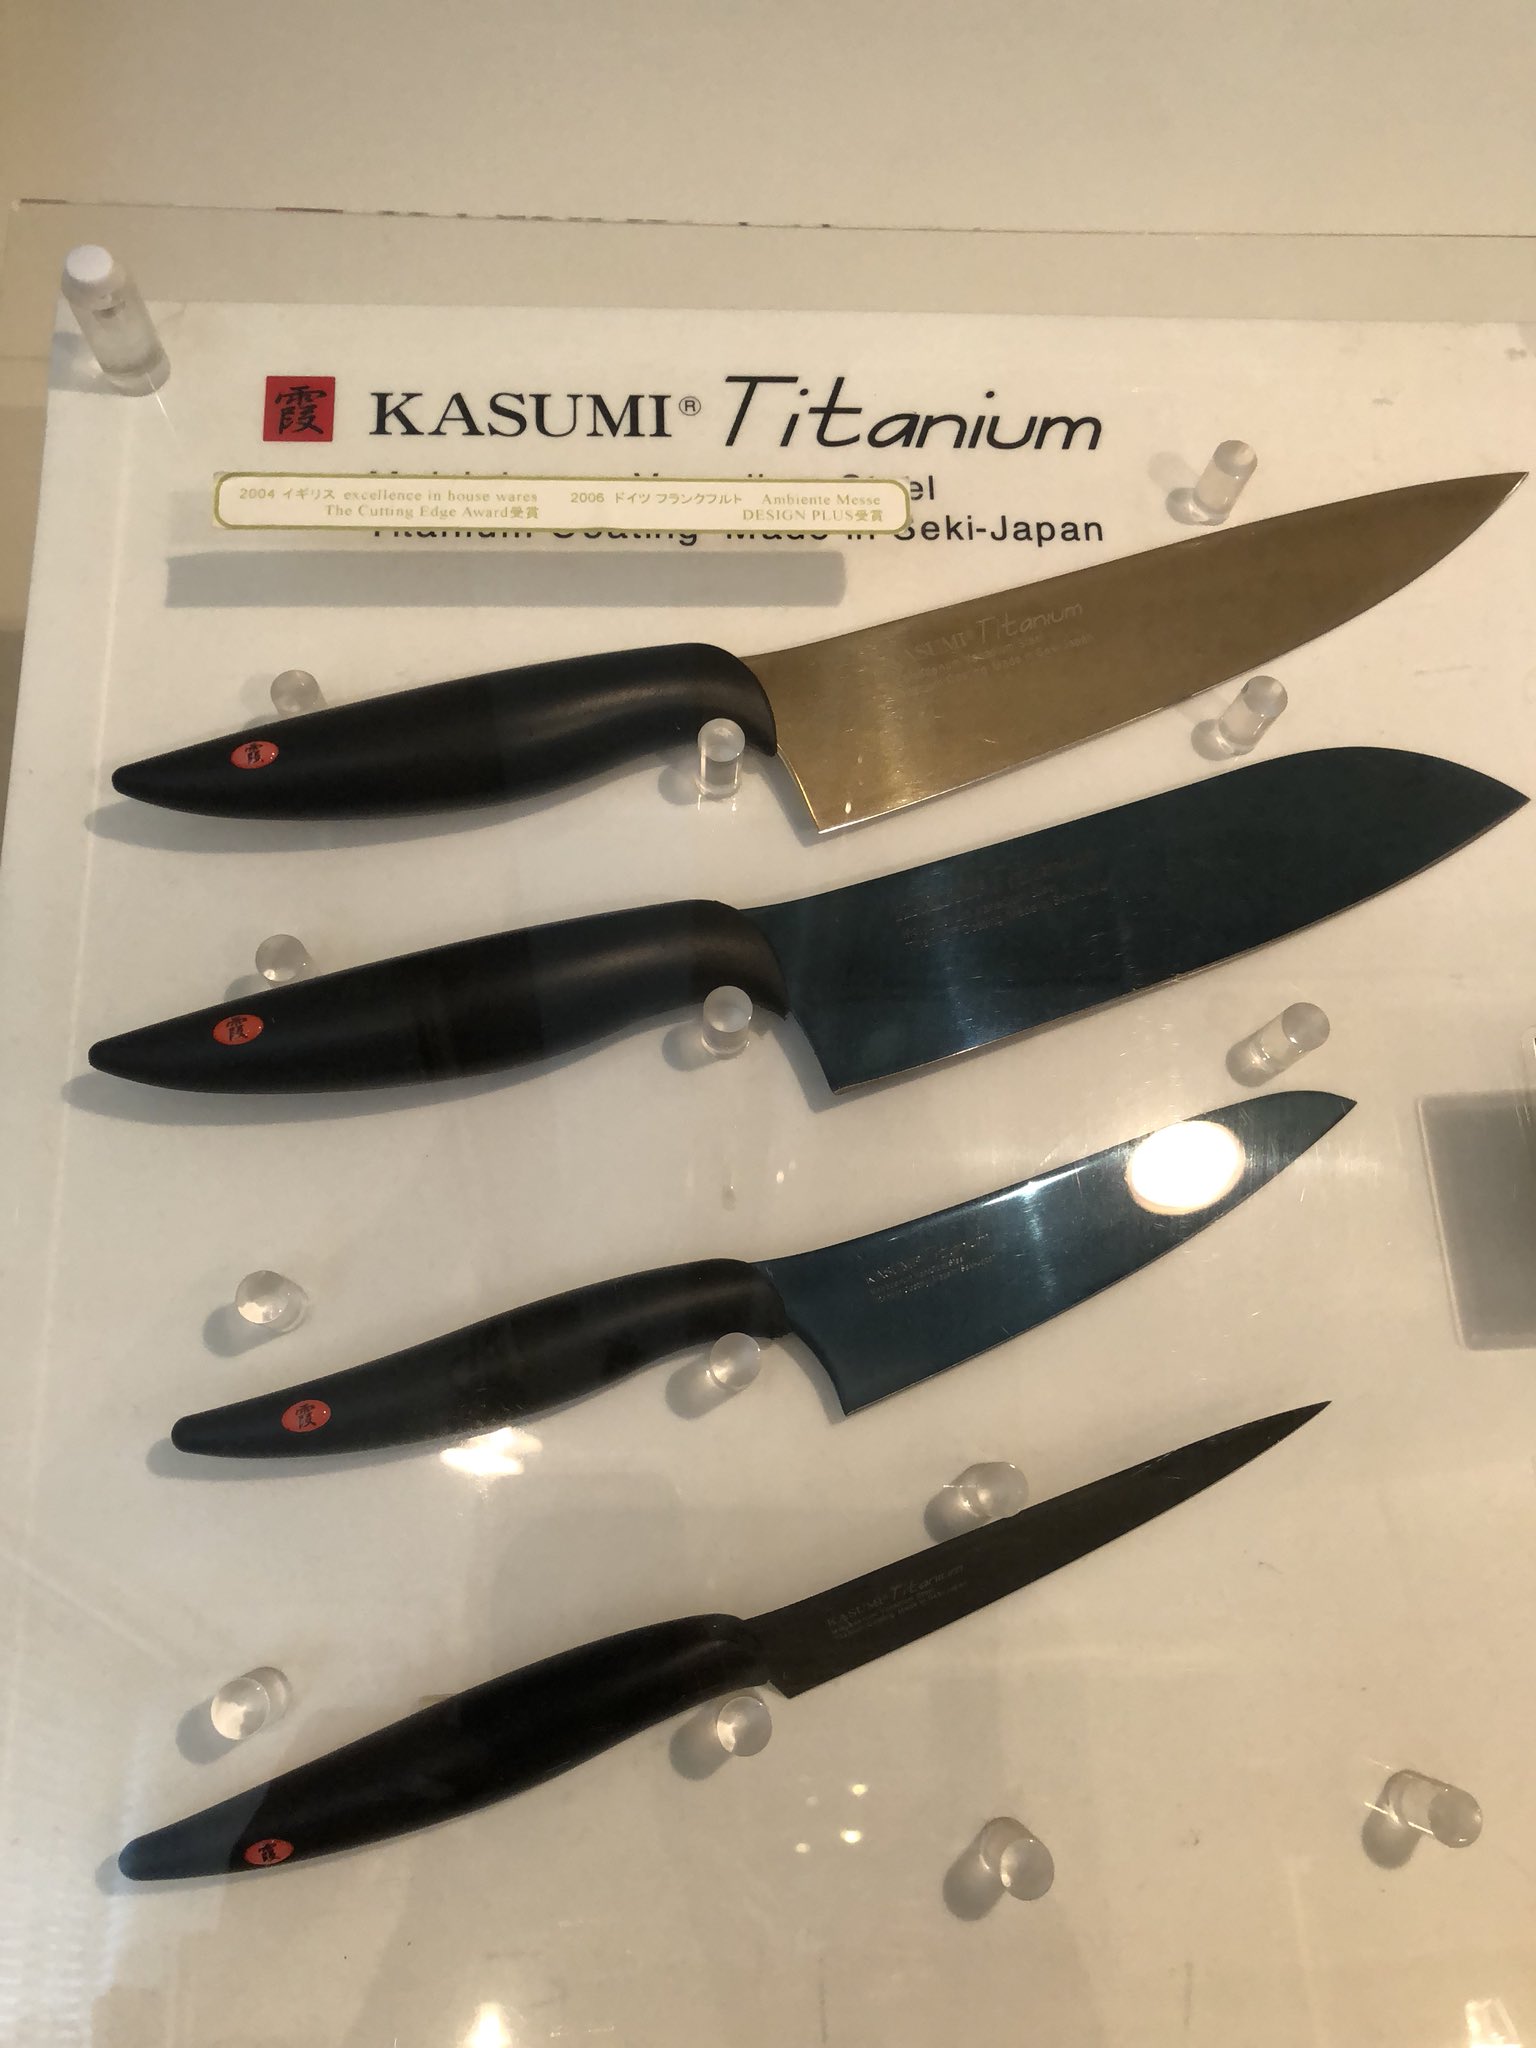 シオガマアパートメントスタイル 関の刃物メーカー スミカマ その包丁 霞 Kasumi ブランドのkasumi Titanium 最近やけに問い合わせが増えたと思ったらyoutubeで話題 なんですね 取り扱い始めて10年以上にはなるけどここまでになるとは 恐るべし